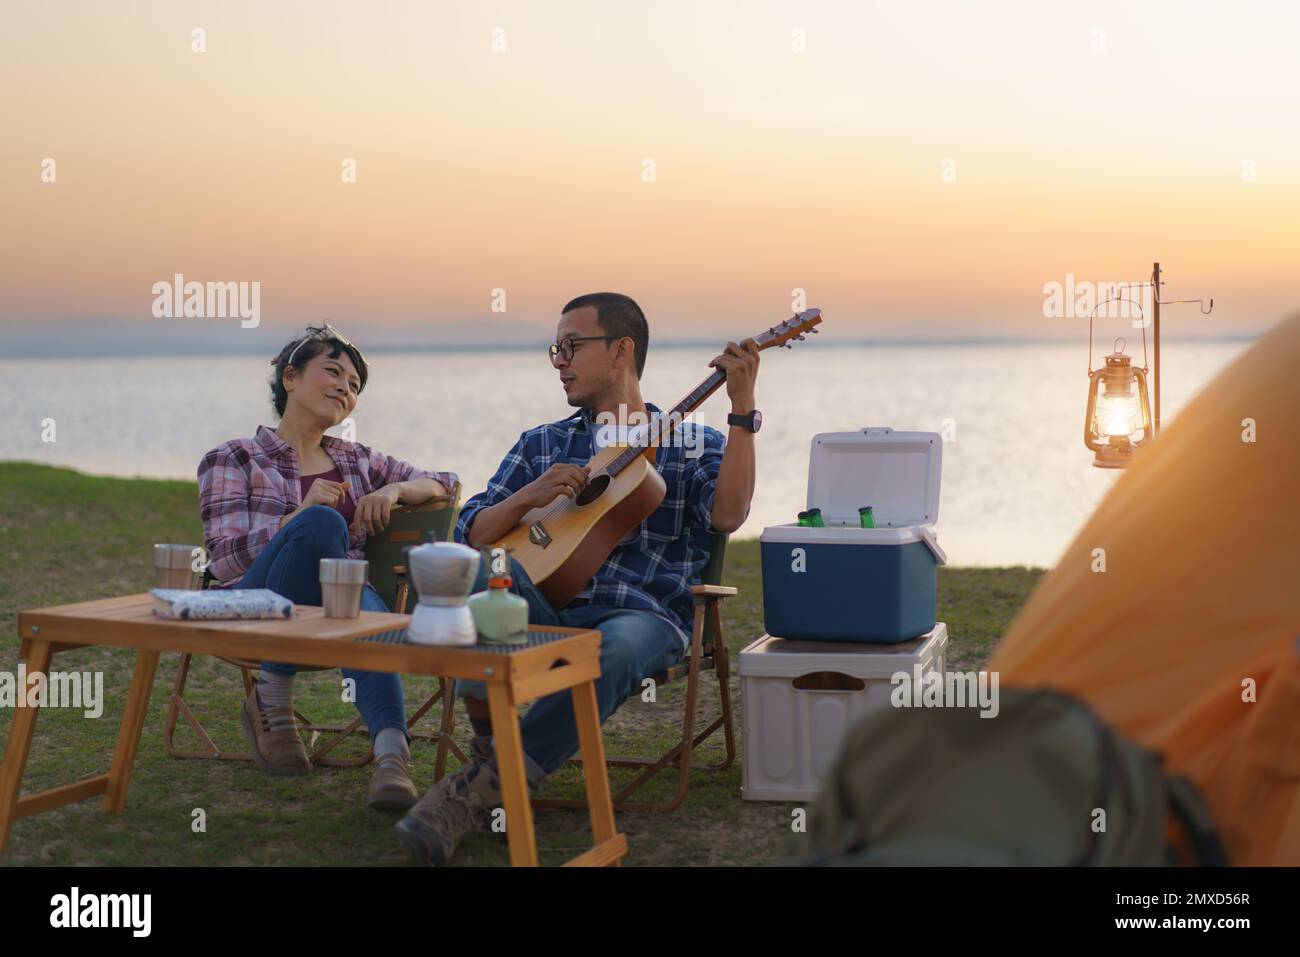 Ein asiatisches Paar singt und spielt Gitarre in seinem Campingbereich mit See im Hintergrund während des Sonnenuntergangs. Stockfoto